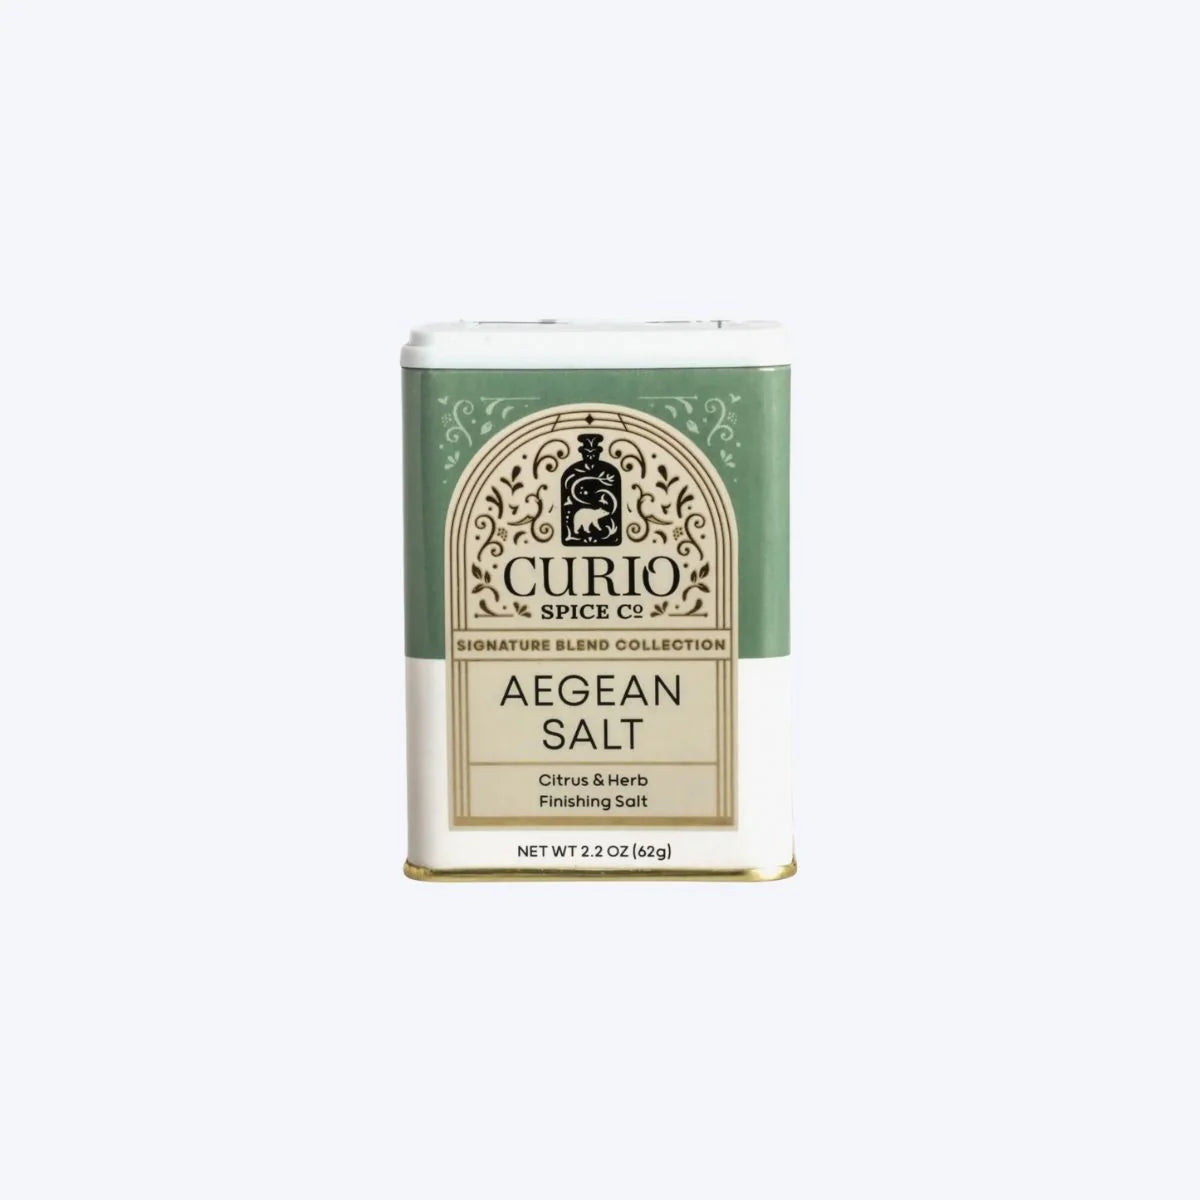 Aegean Salt Tin by Curio Spice Co.